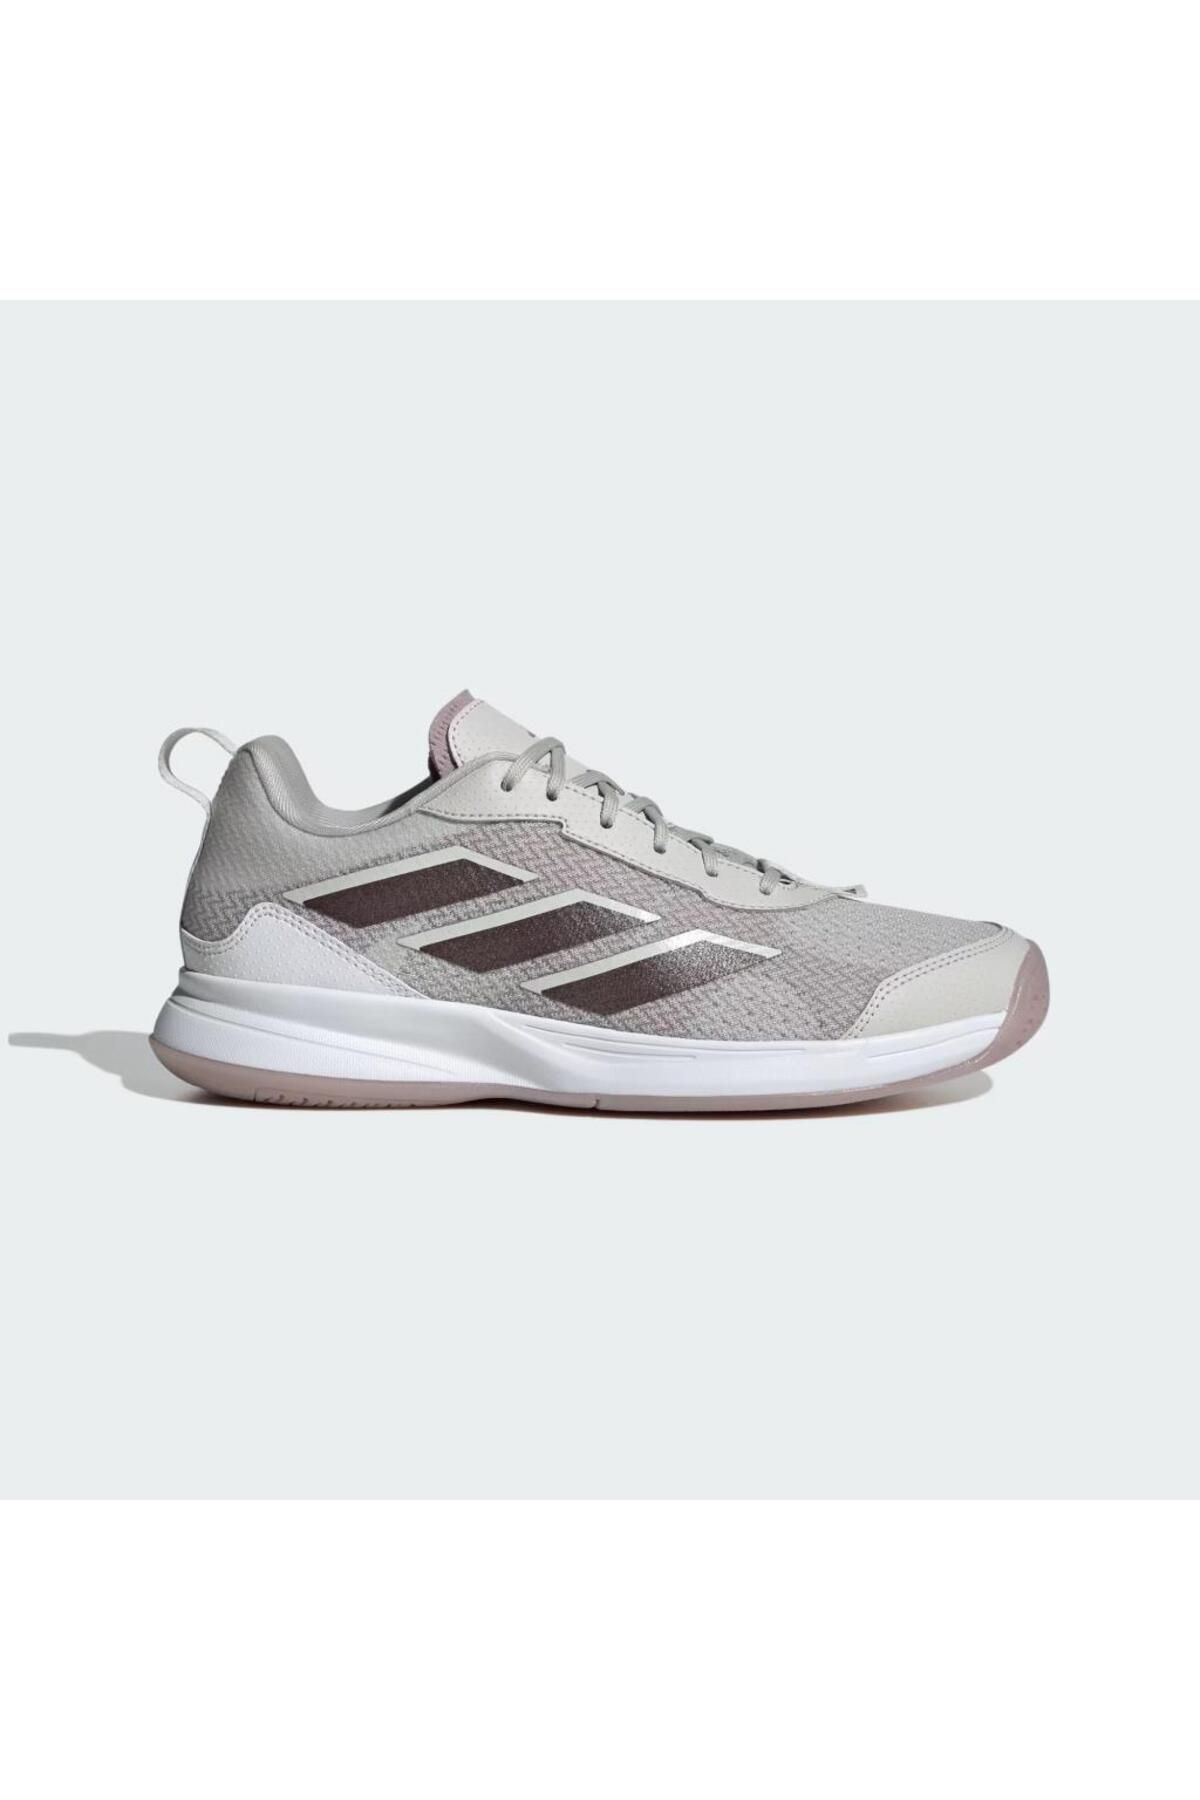 adidas IF0415 Avaflash Kadın Gri Tenis Ayakkabısı